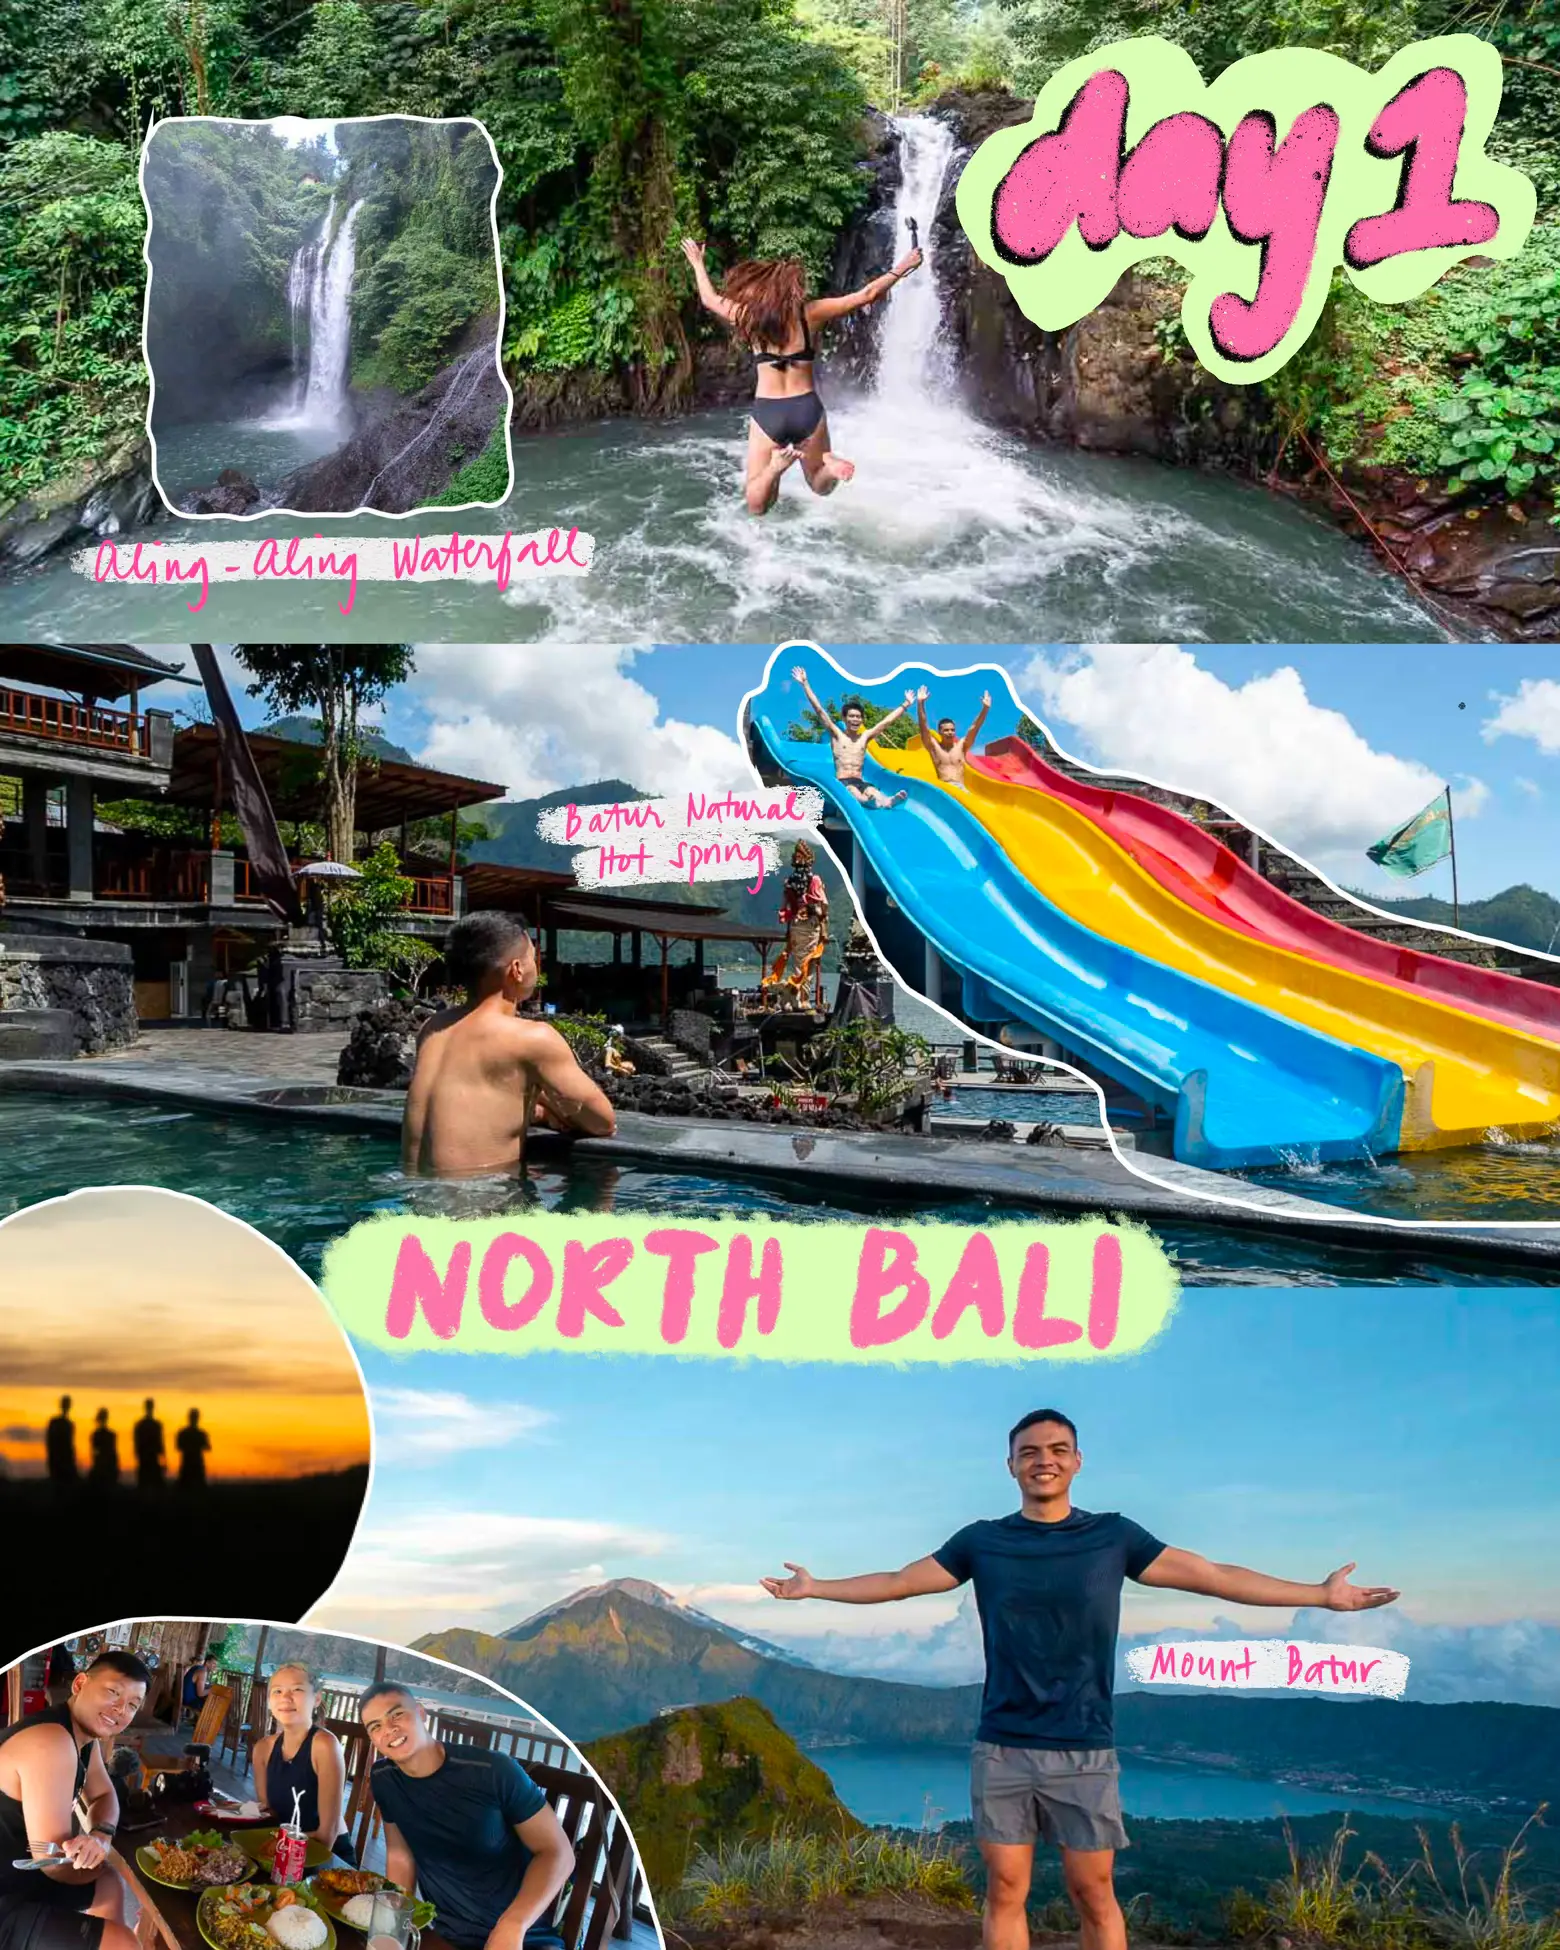 5D Bali Budget Itin <S$500 💸 (hidden gems & more!)'s images(1)